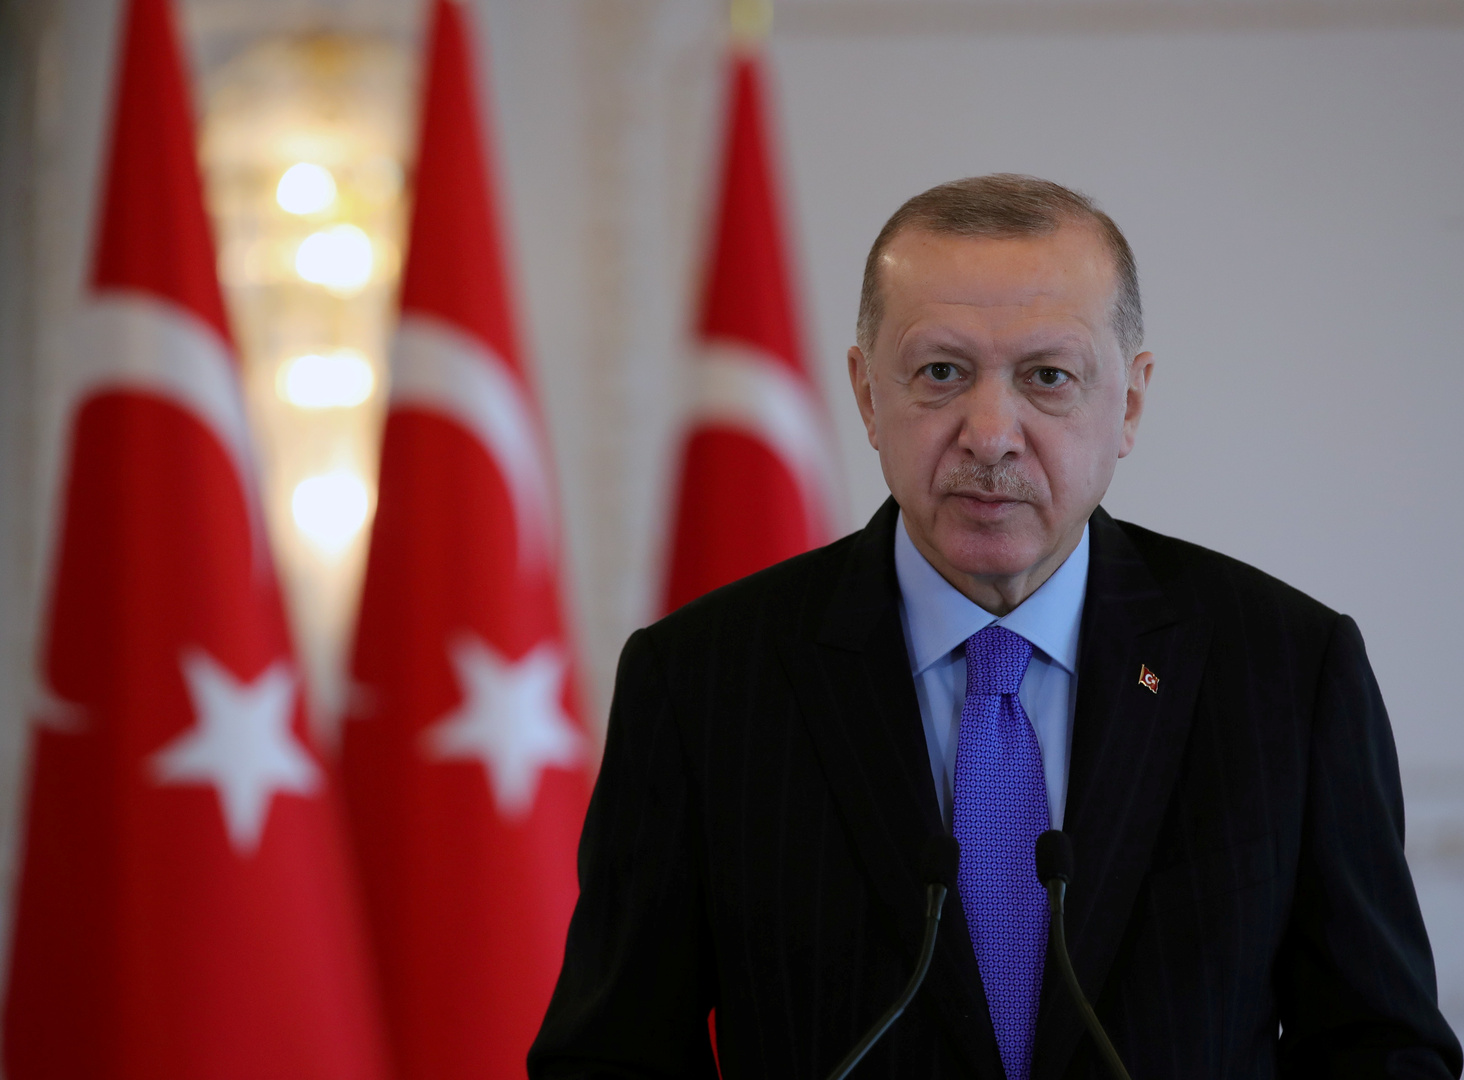 أردوغان: نبذل قصارى جهدنا لضمان مستقبل مشرق لجارتنا سوريا على قاعدة وحدة أراضيها ووحدتها السياسية